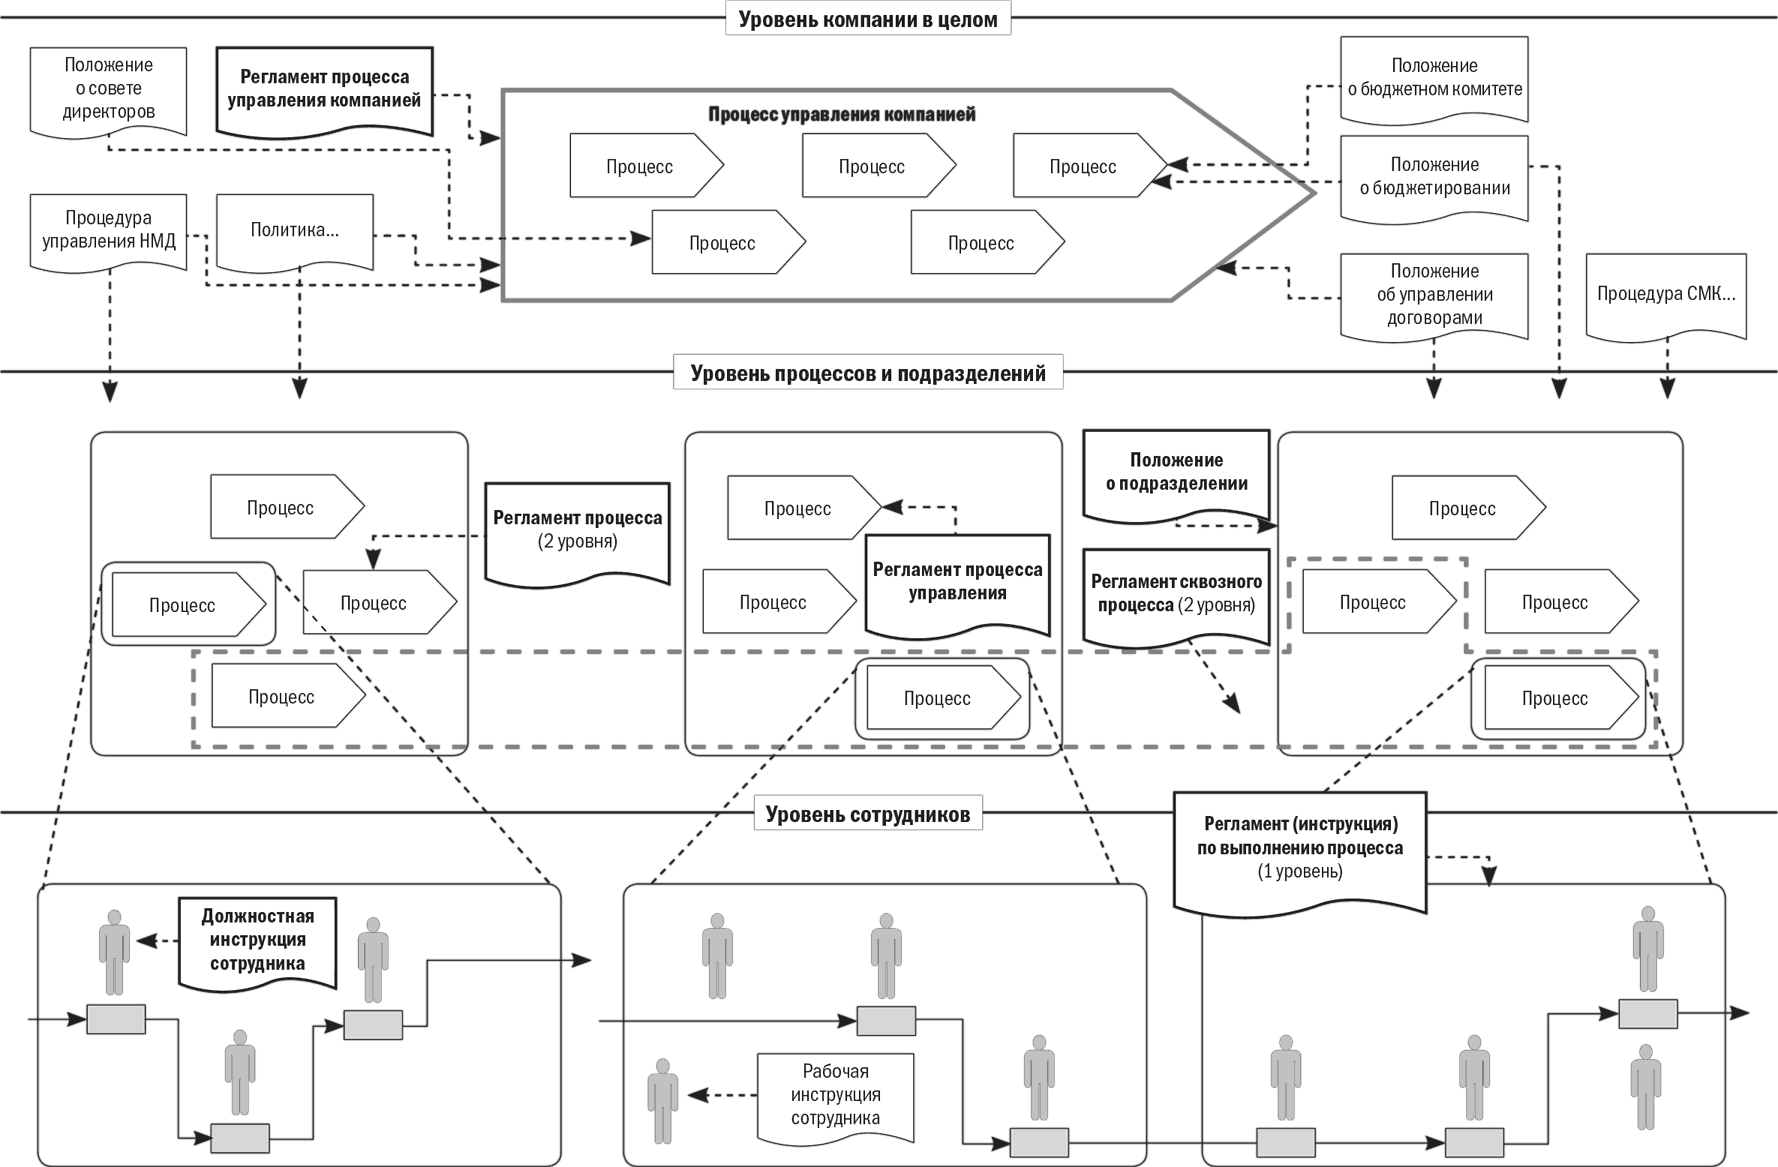 Карта бизнес-процессов организации пример. Карта процессов производственного предприятия пример. Карта бизнес процессов предприятия пример. Схема бизнес-процессов предприятия пример.